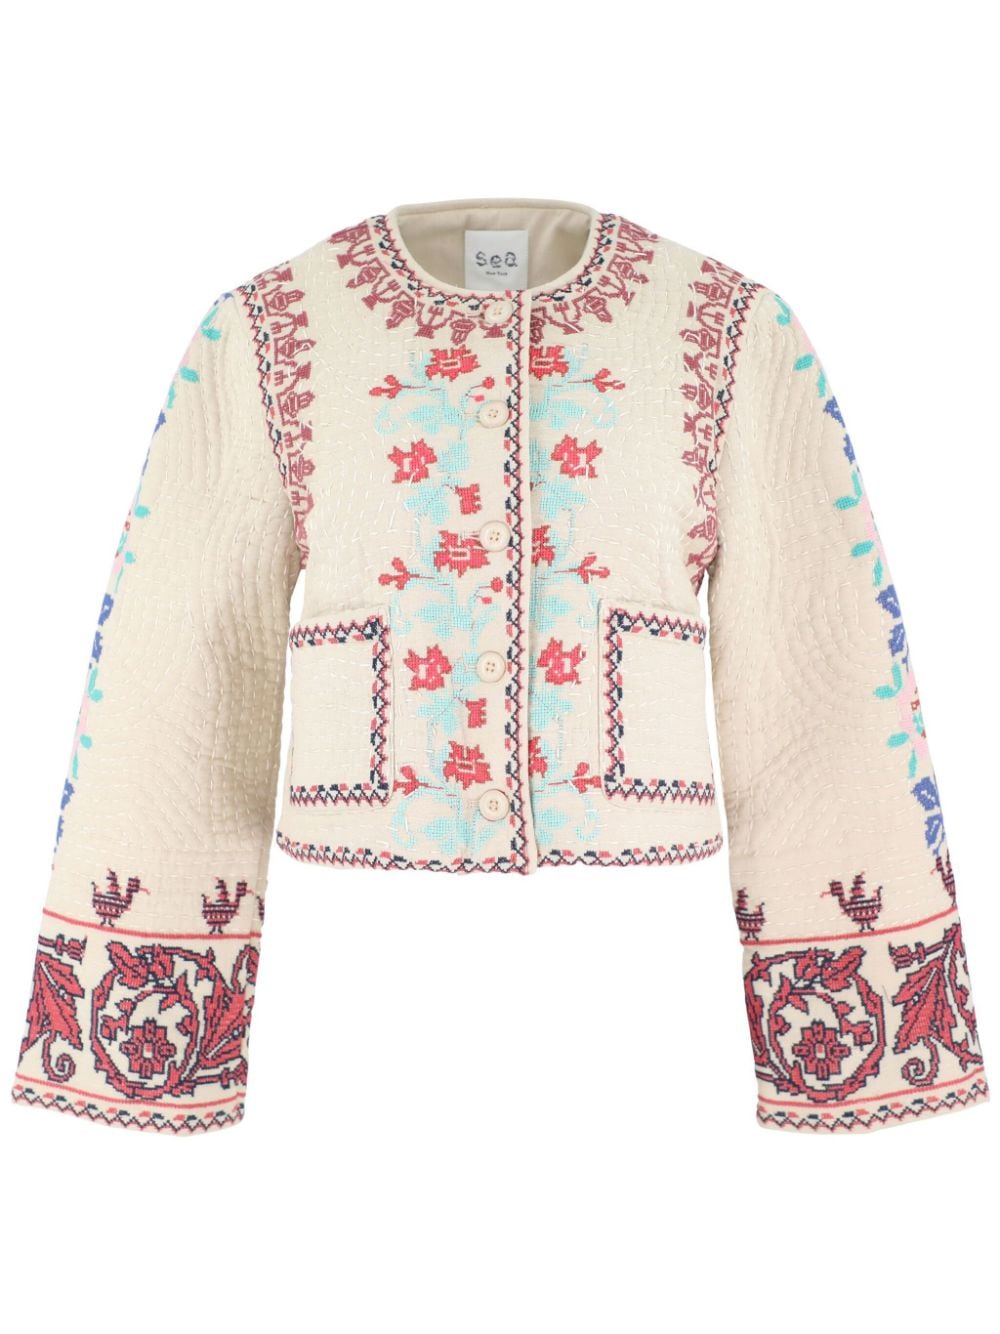 Ramona embroidered jacket